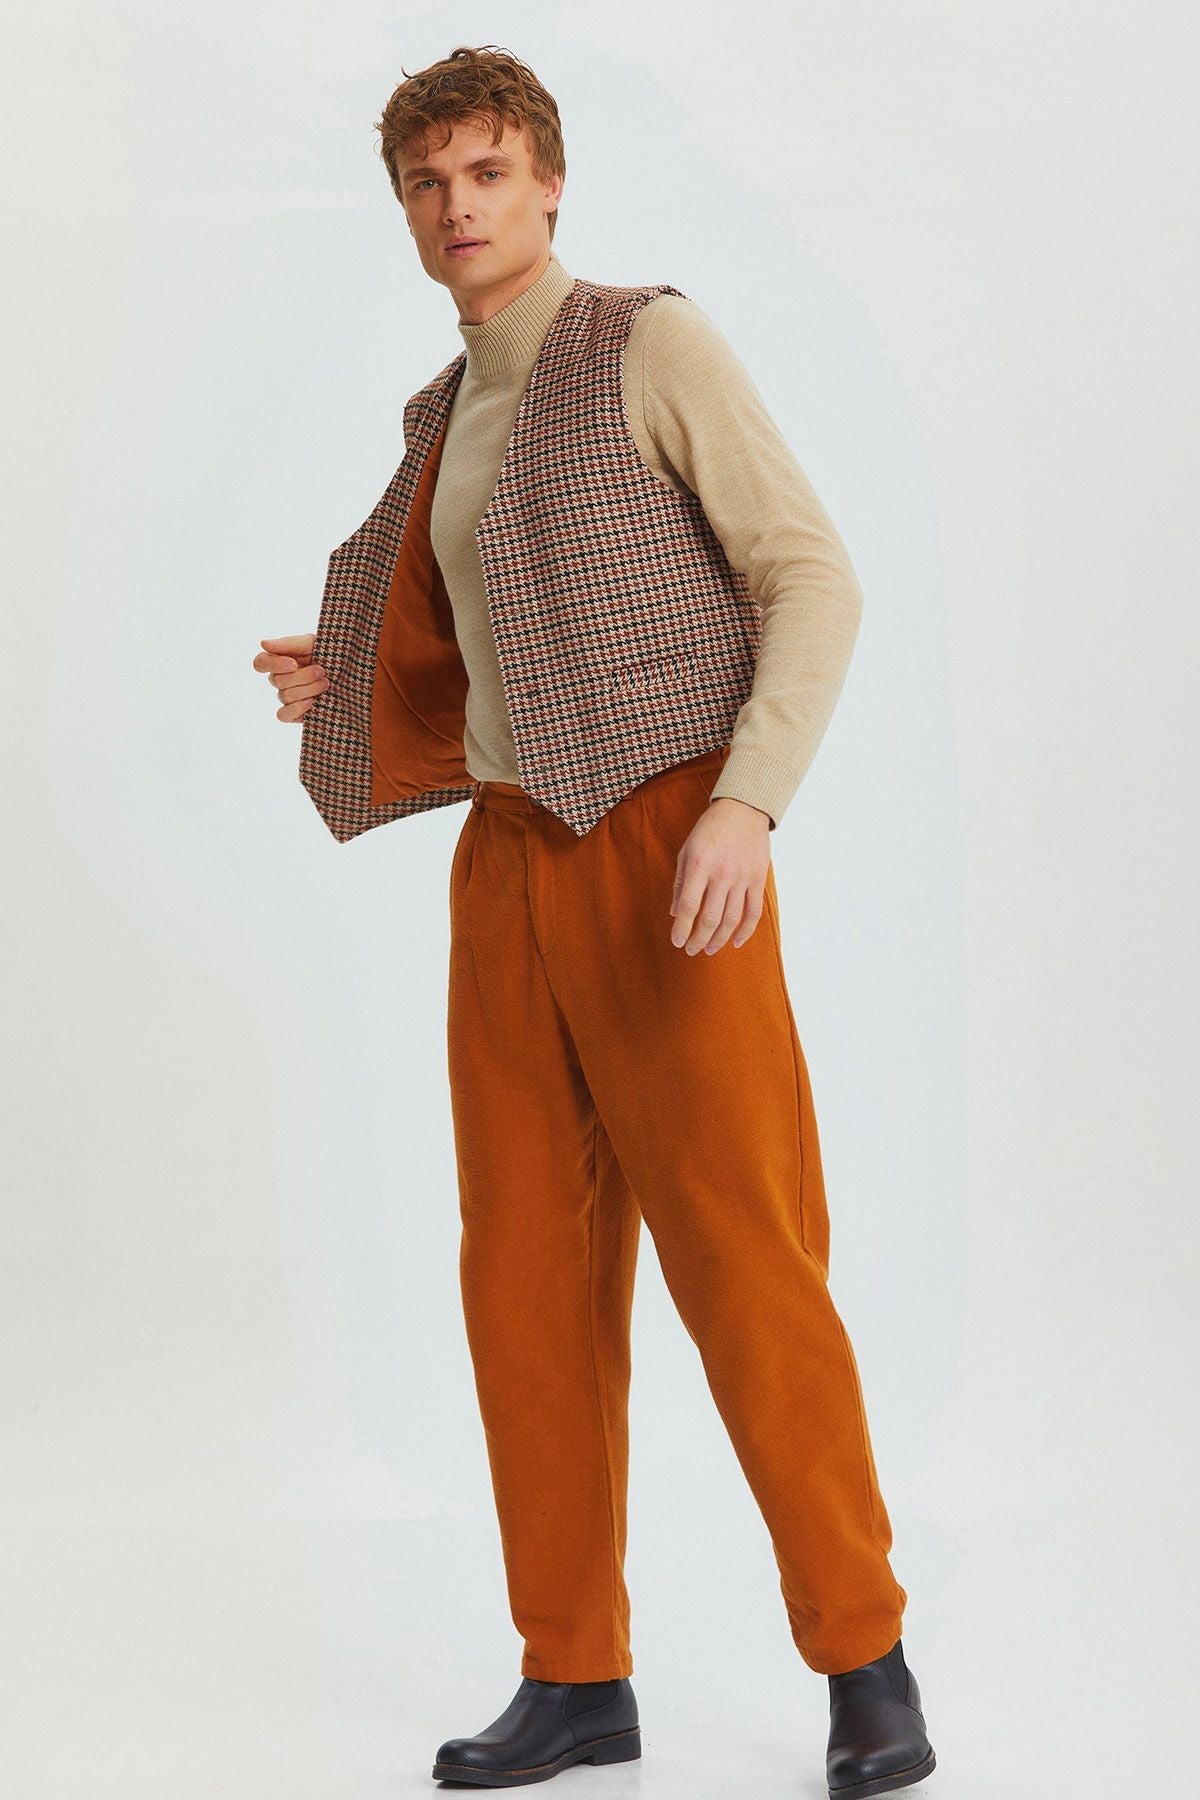 Bohemian Style Classic Cut Men's Vest Brown